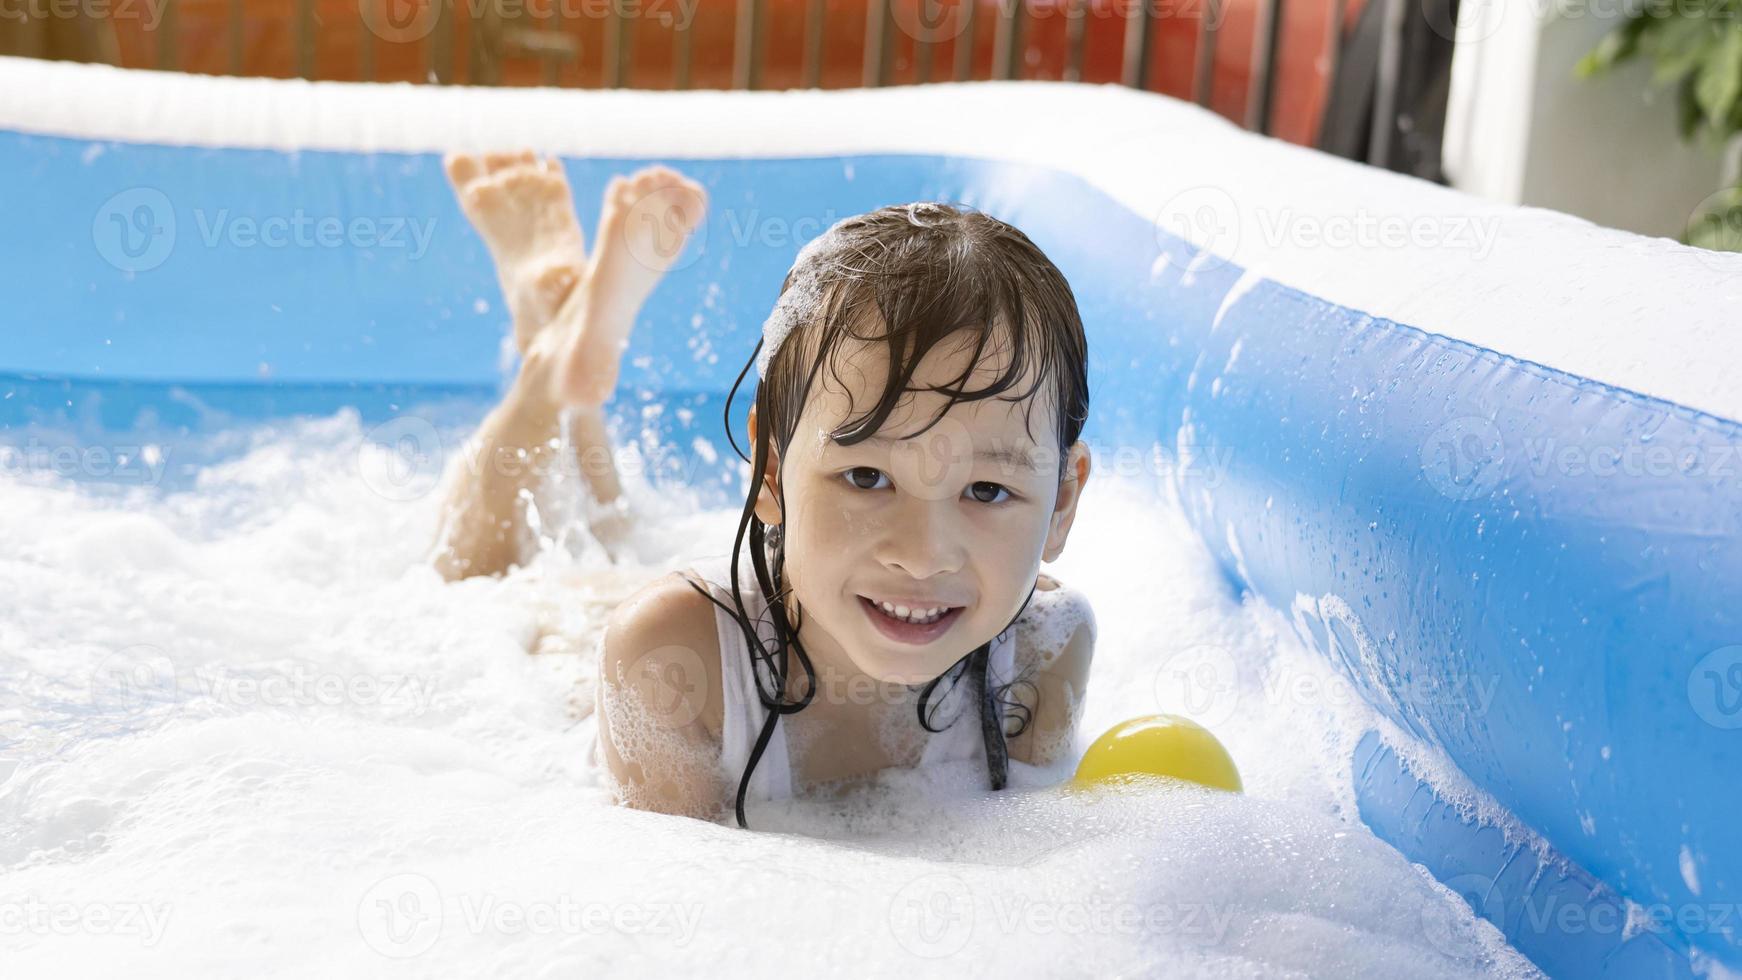 belle fille asiatique jouant dans une piscine gonflable. jouer dans l'eau à la maison pendant l'été. jeu de bulles, bonheur familial, enfants jouant dans l'eau photo